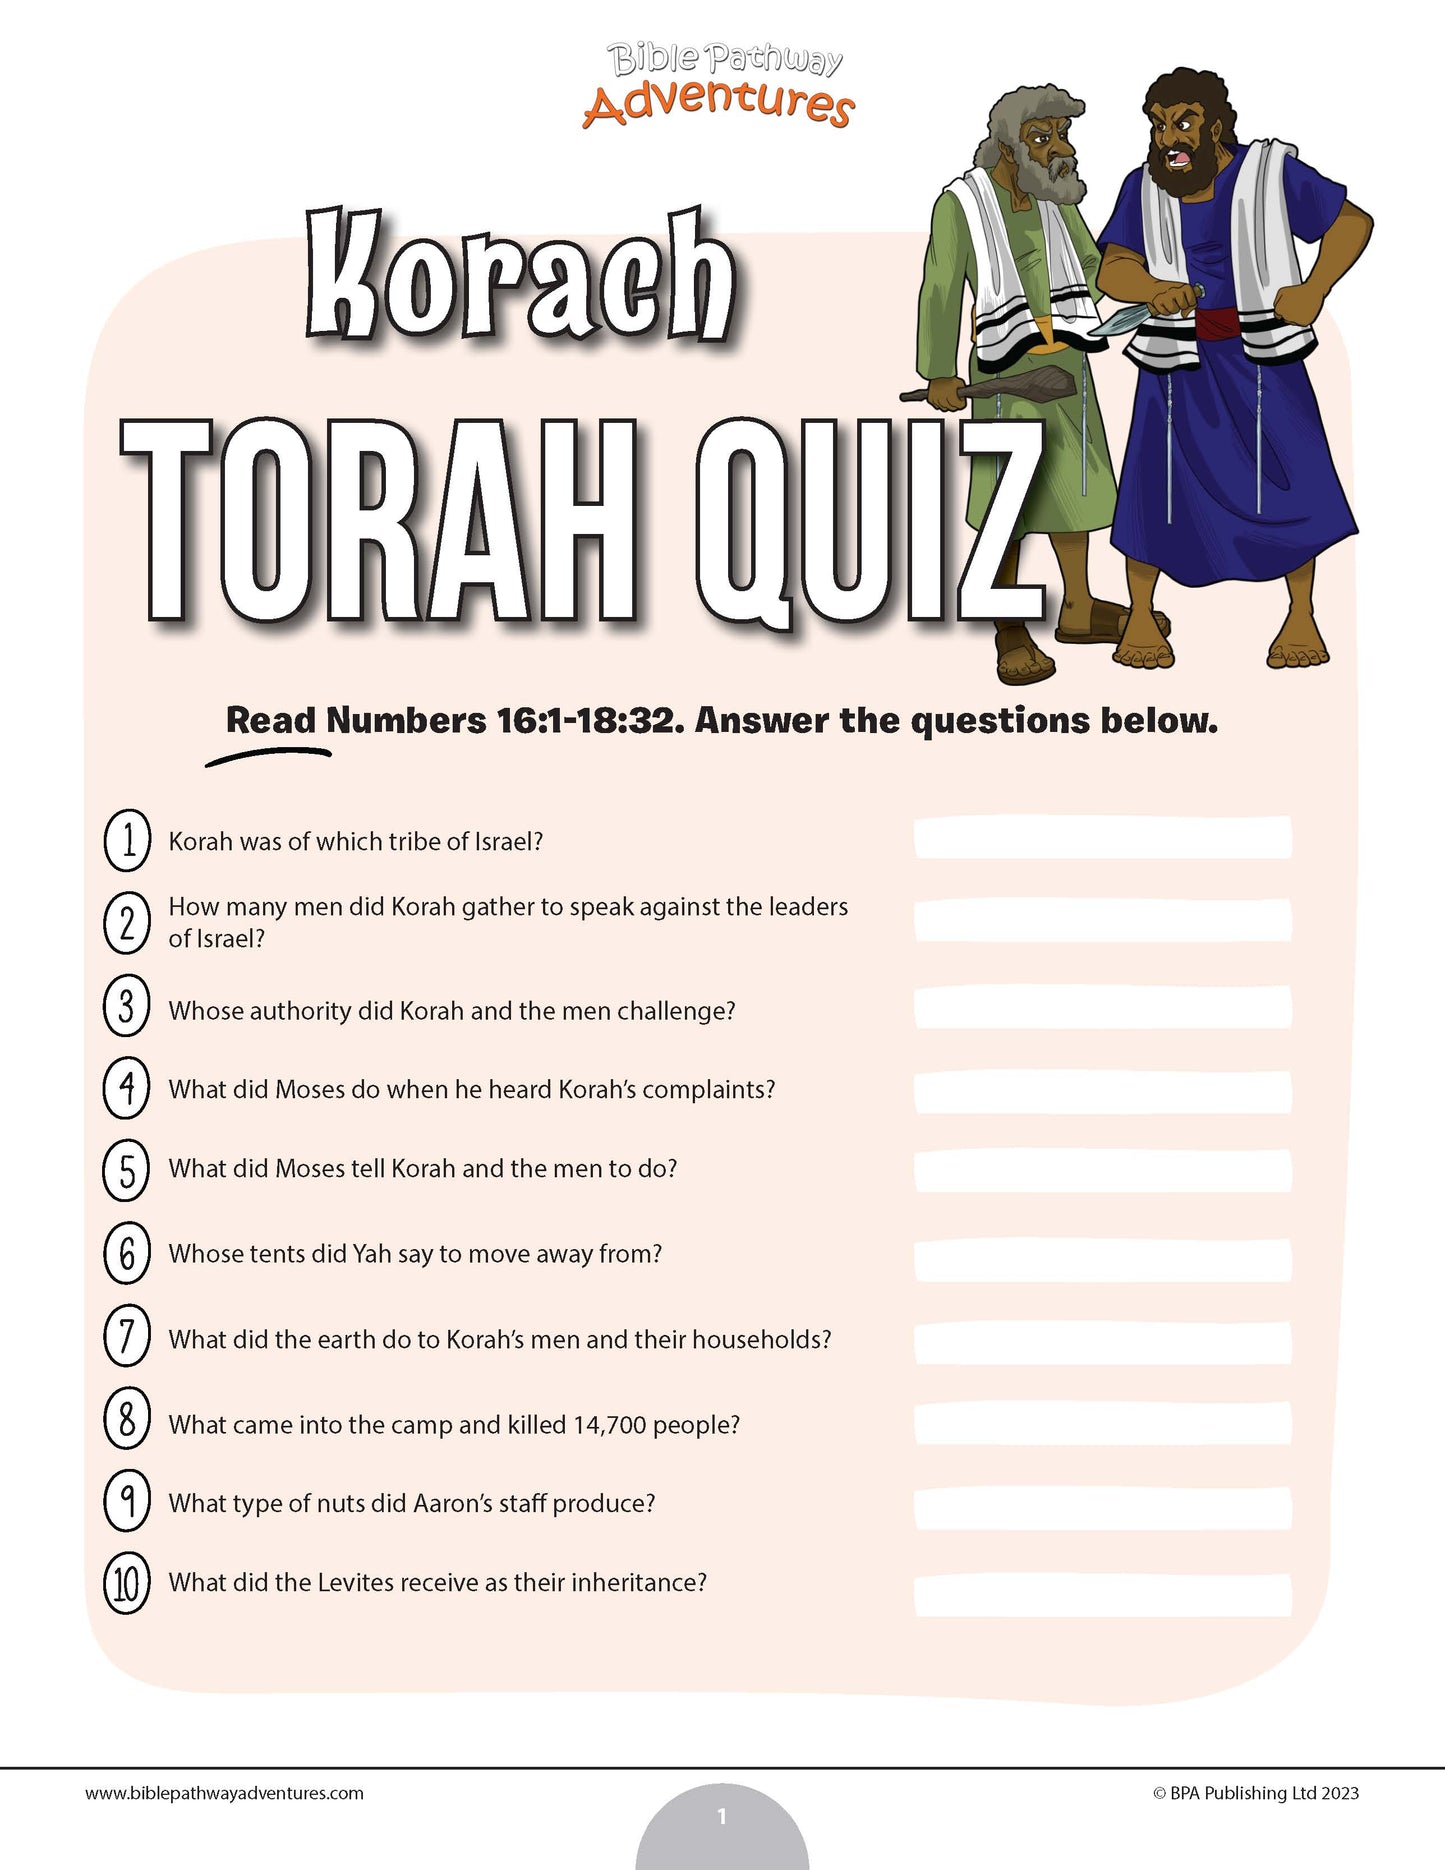 Cuestionario de Koraj Torá